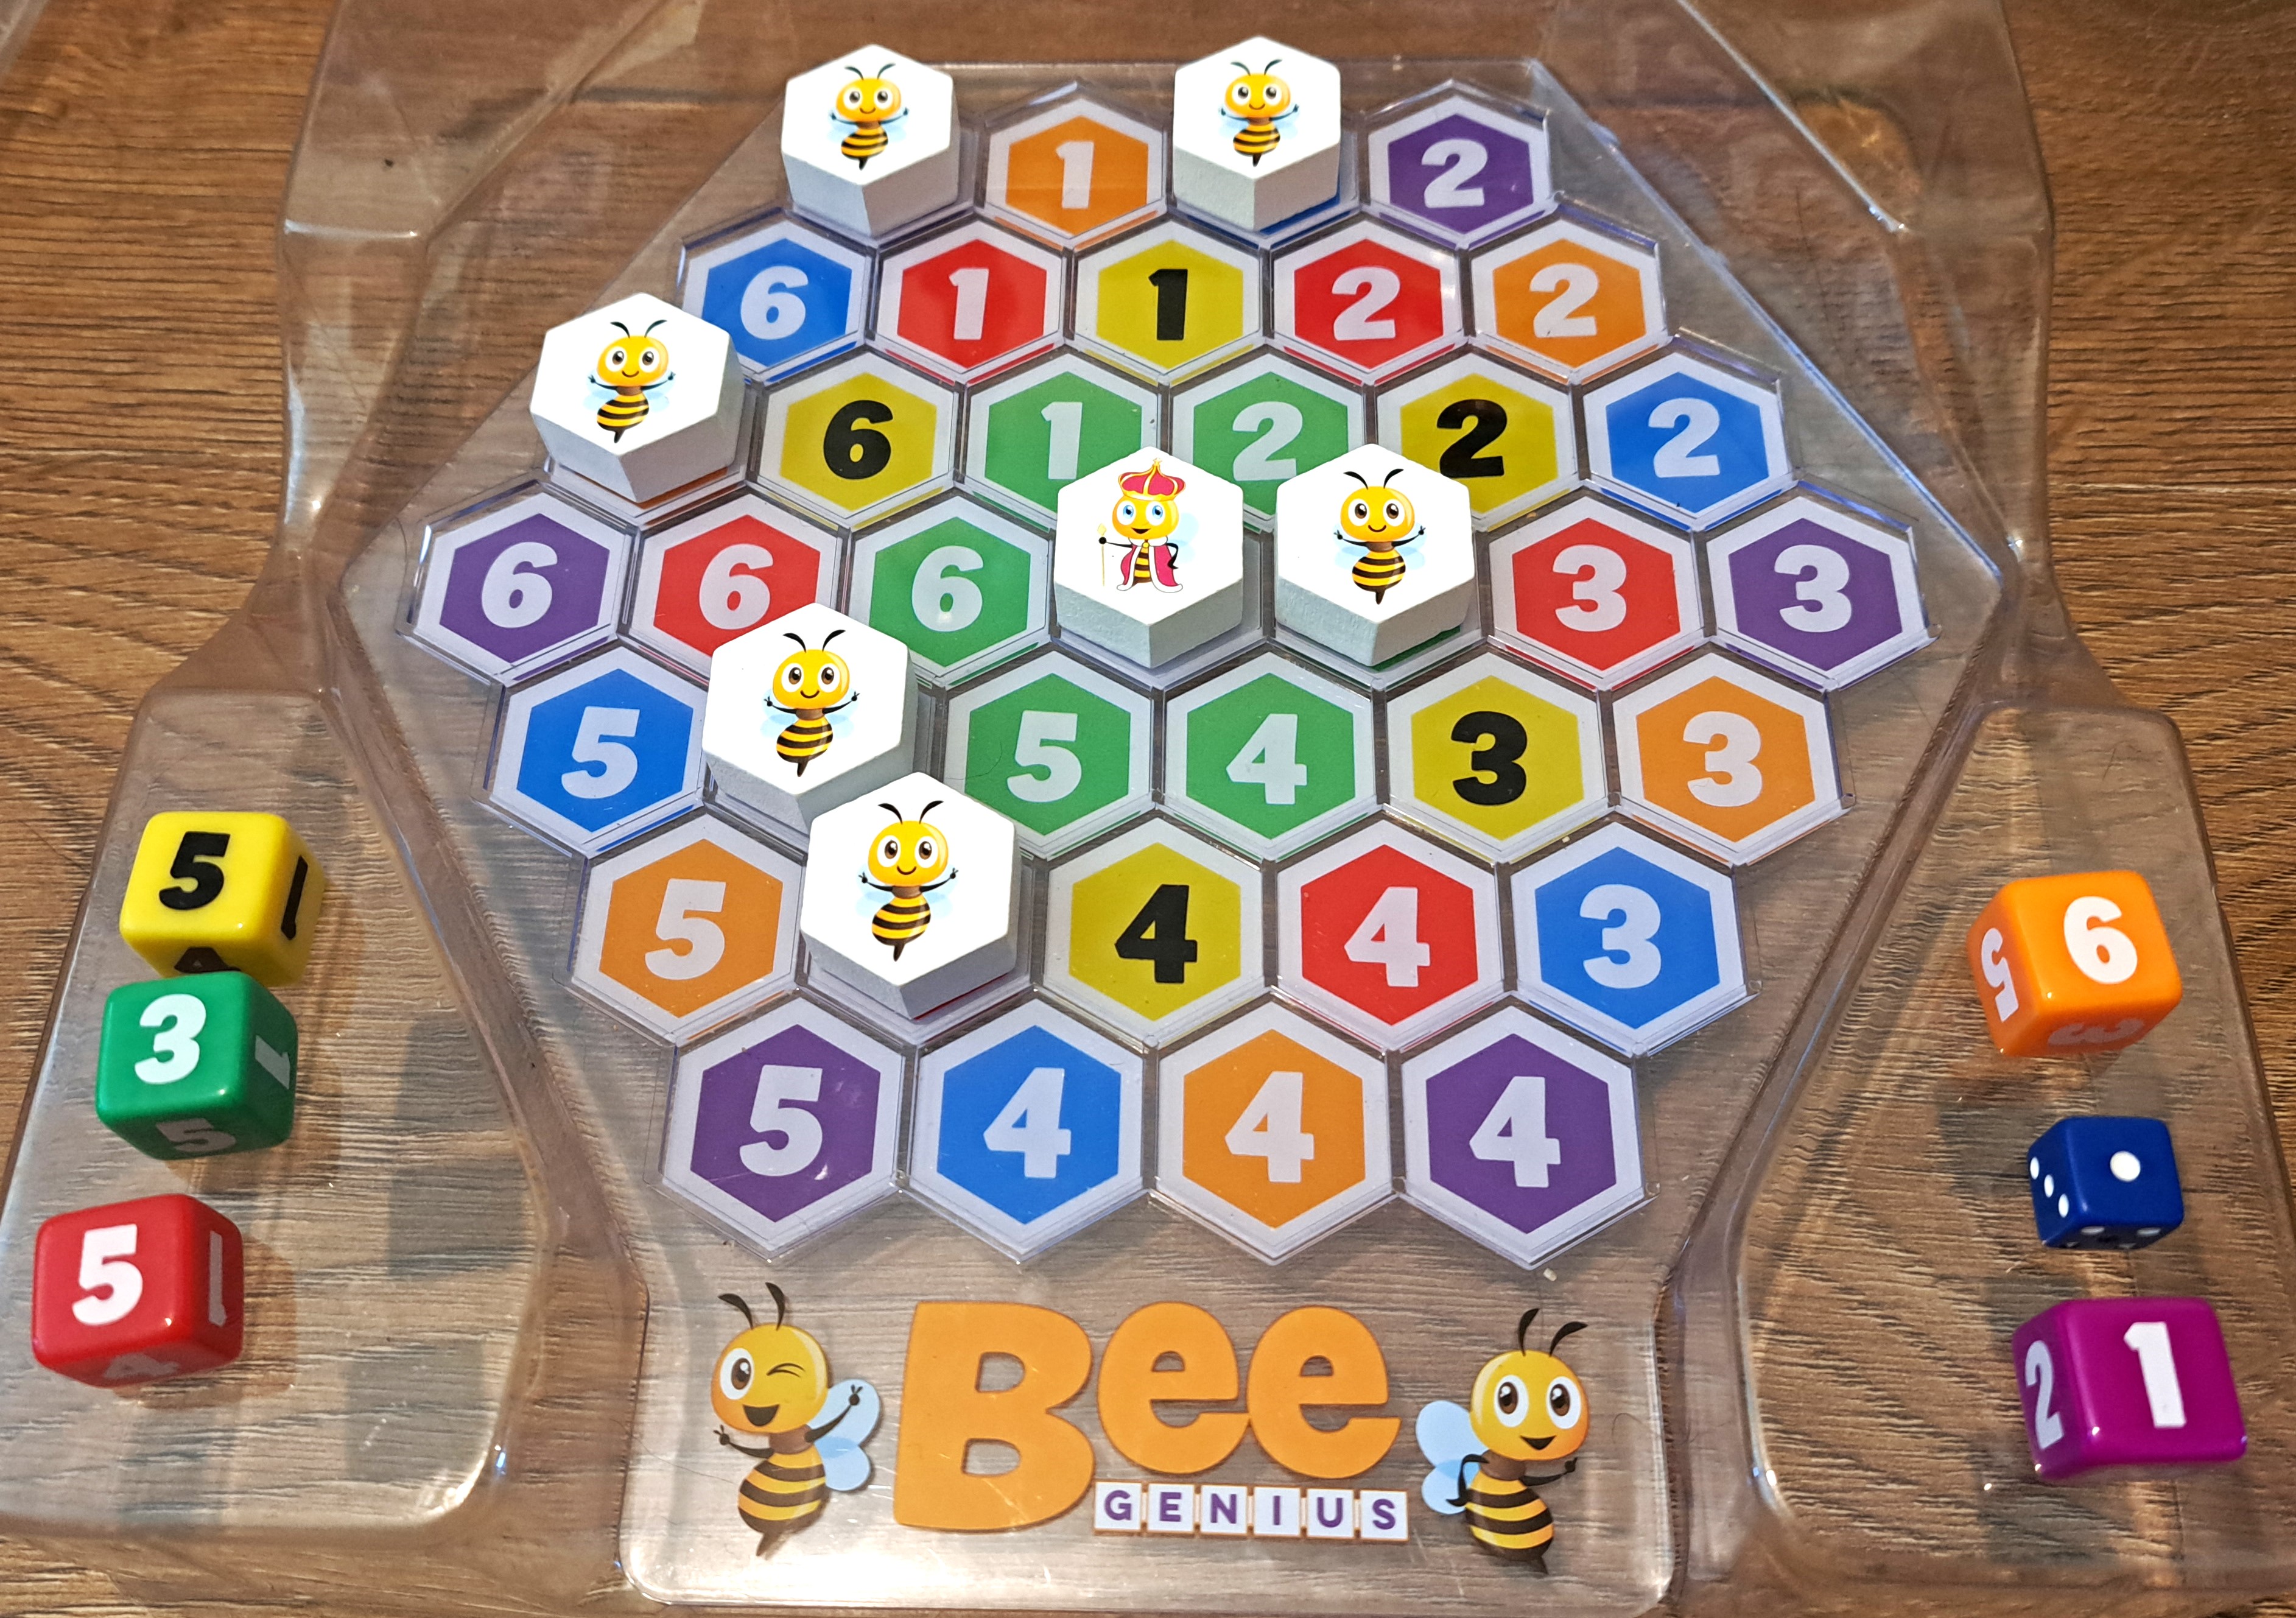 Bee Genius Set-up